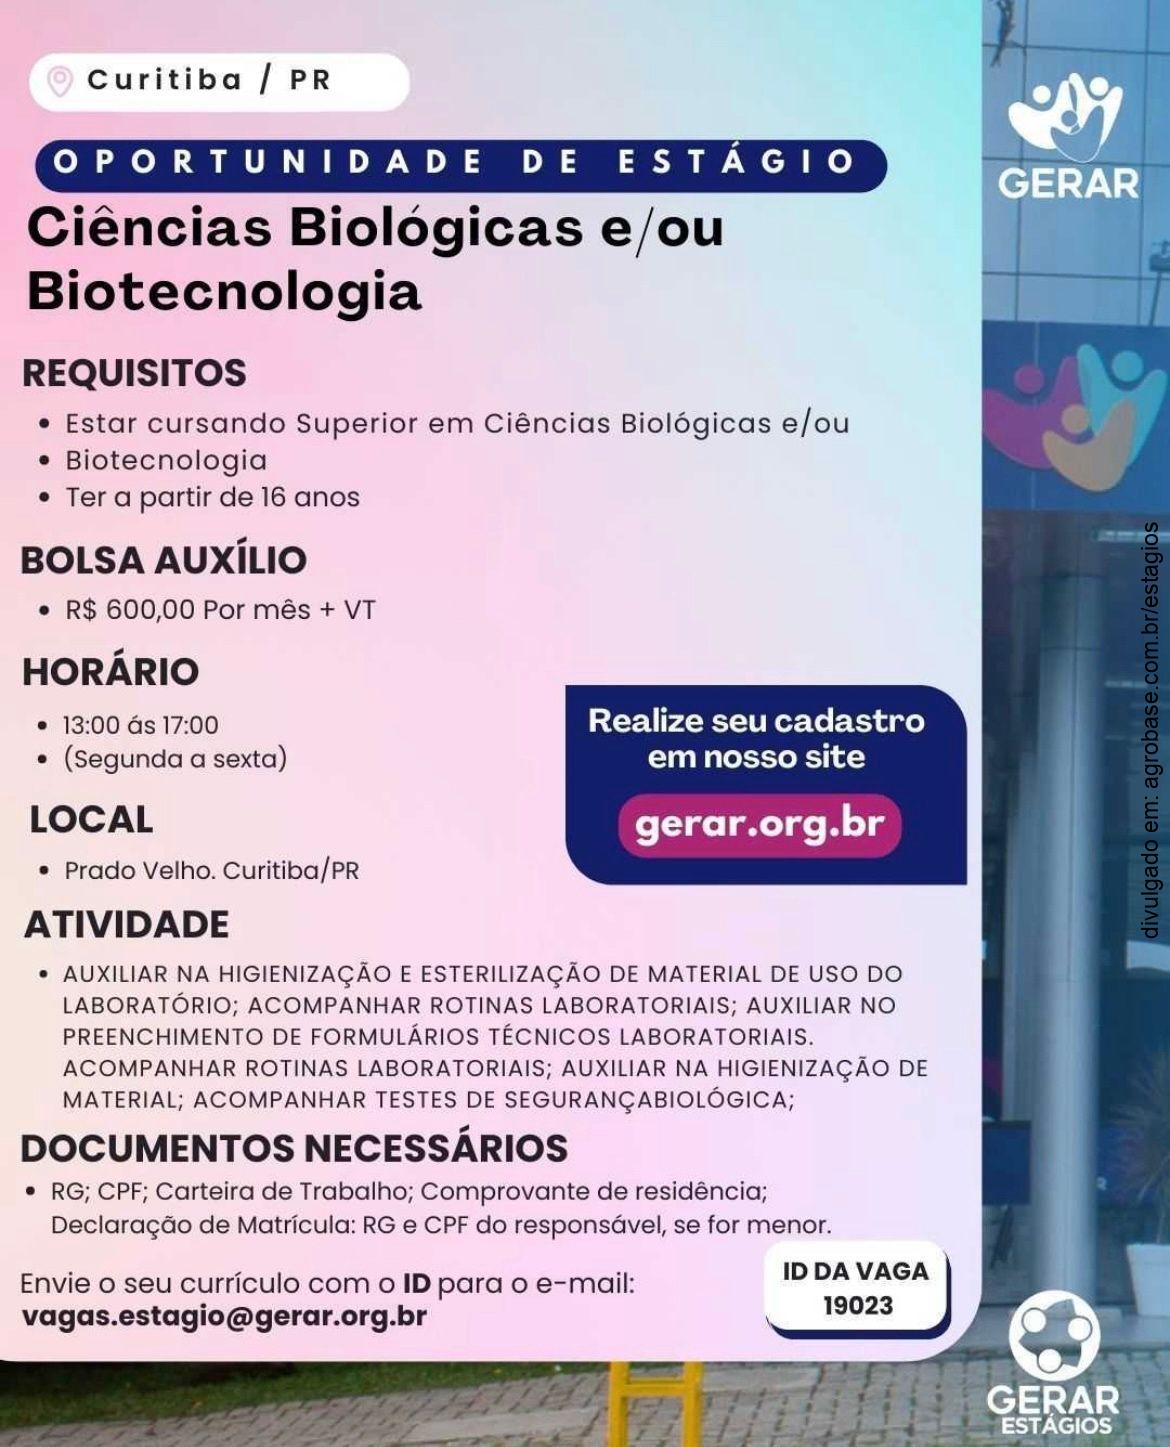 Estágio em ciências biológicas e/ou biotecnologia – Curitiba/PR [tarde]